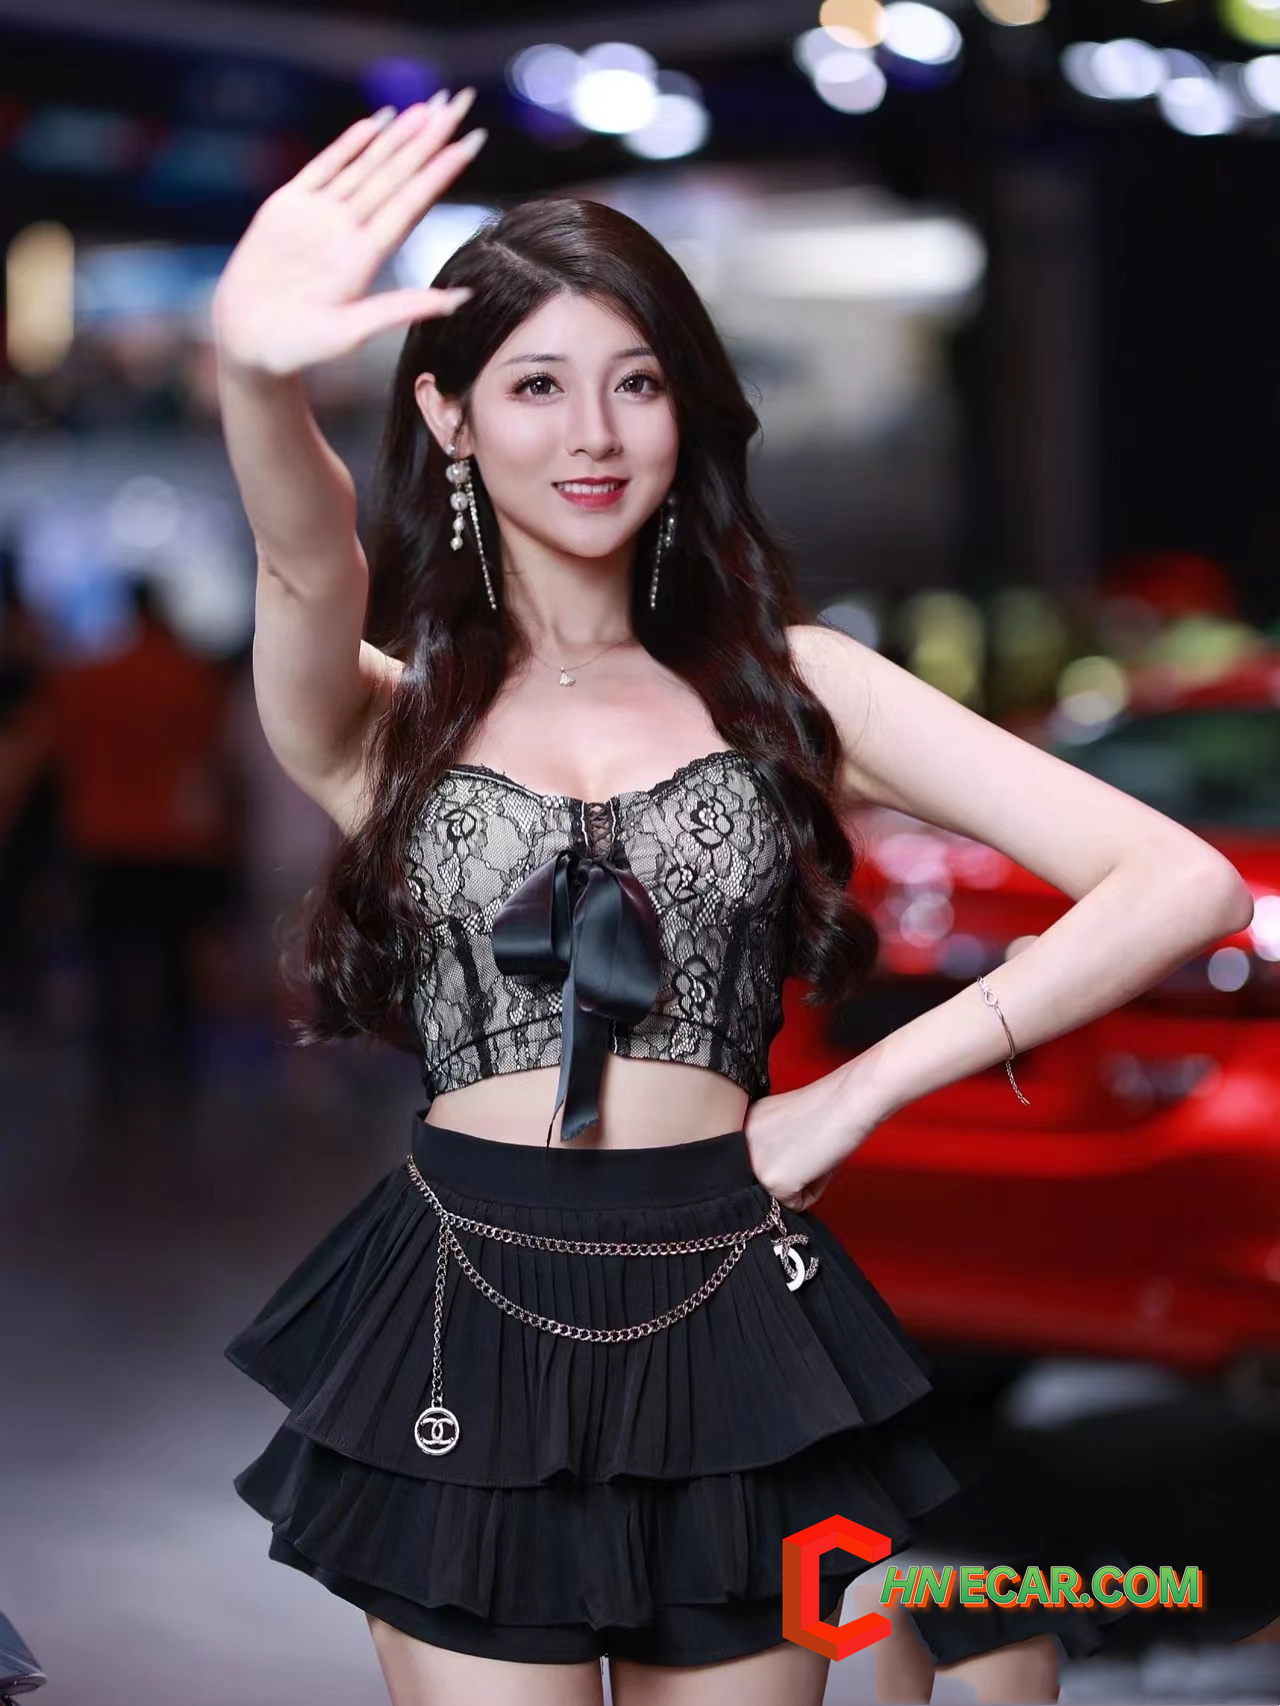 Beautiful Car show model from chongqing auto show